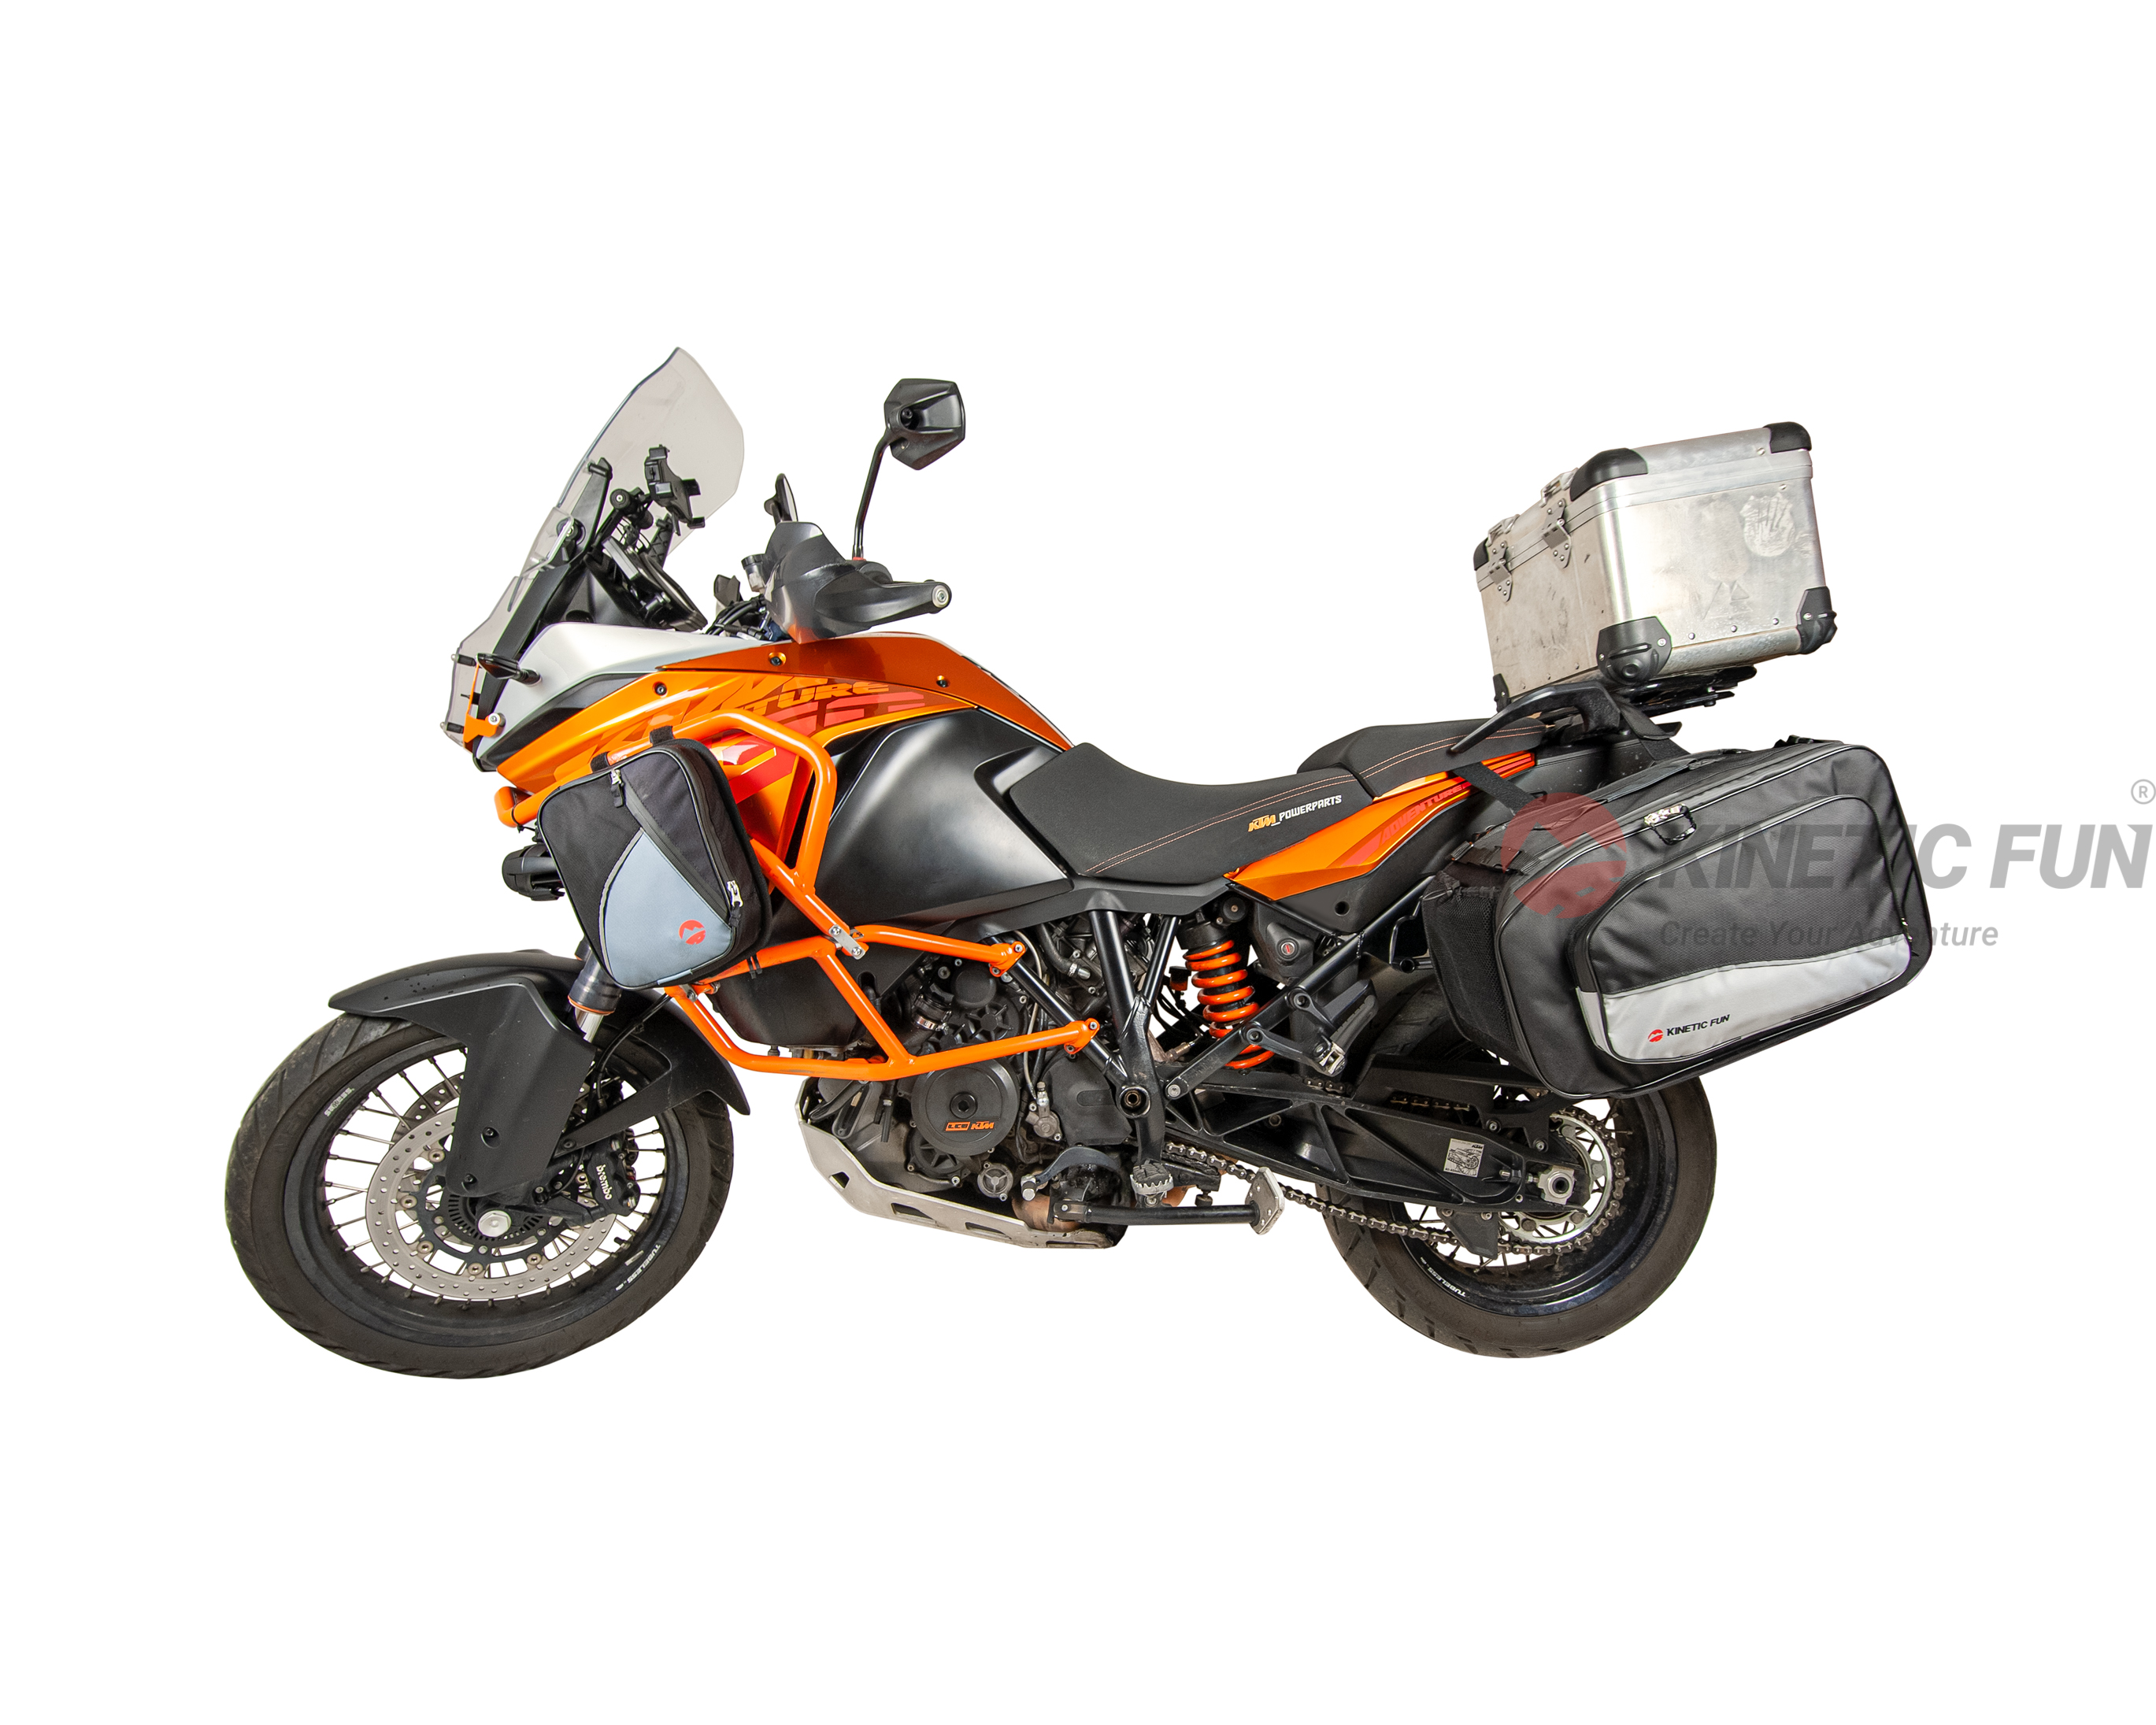 Боковые сумки для мотоцикла - Модель: XL Evo (пара), объём 46-68 литров